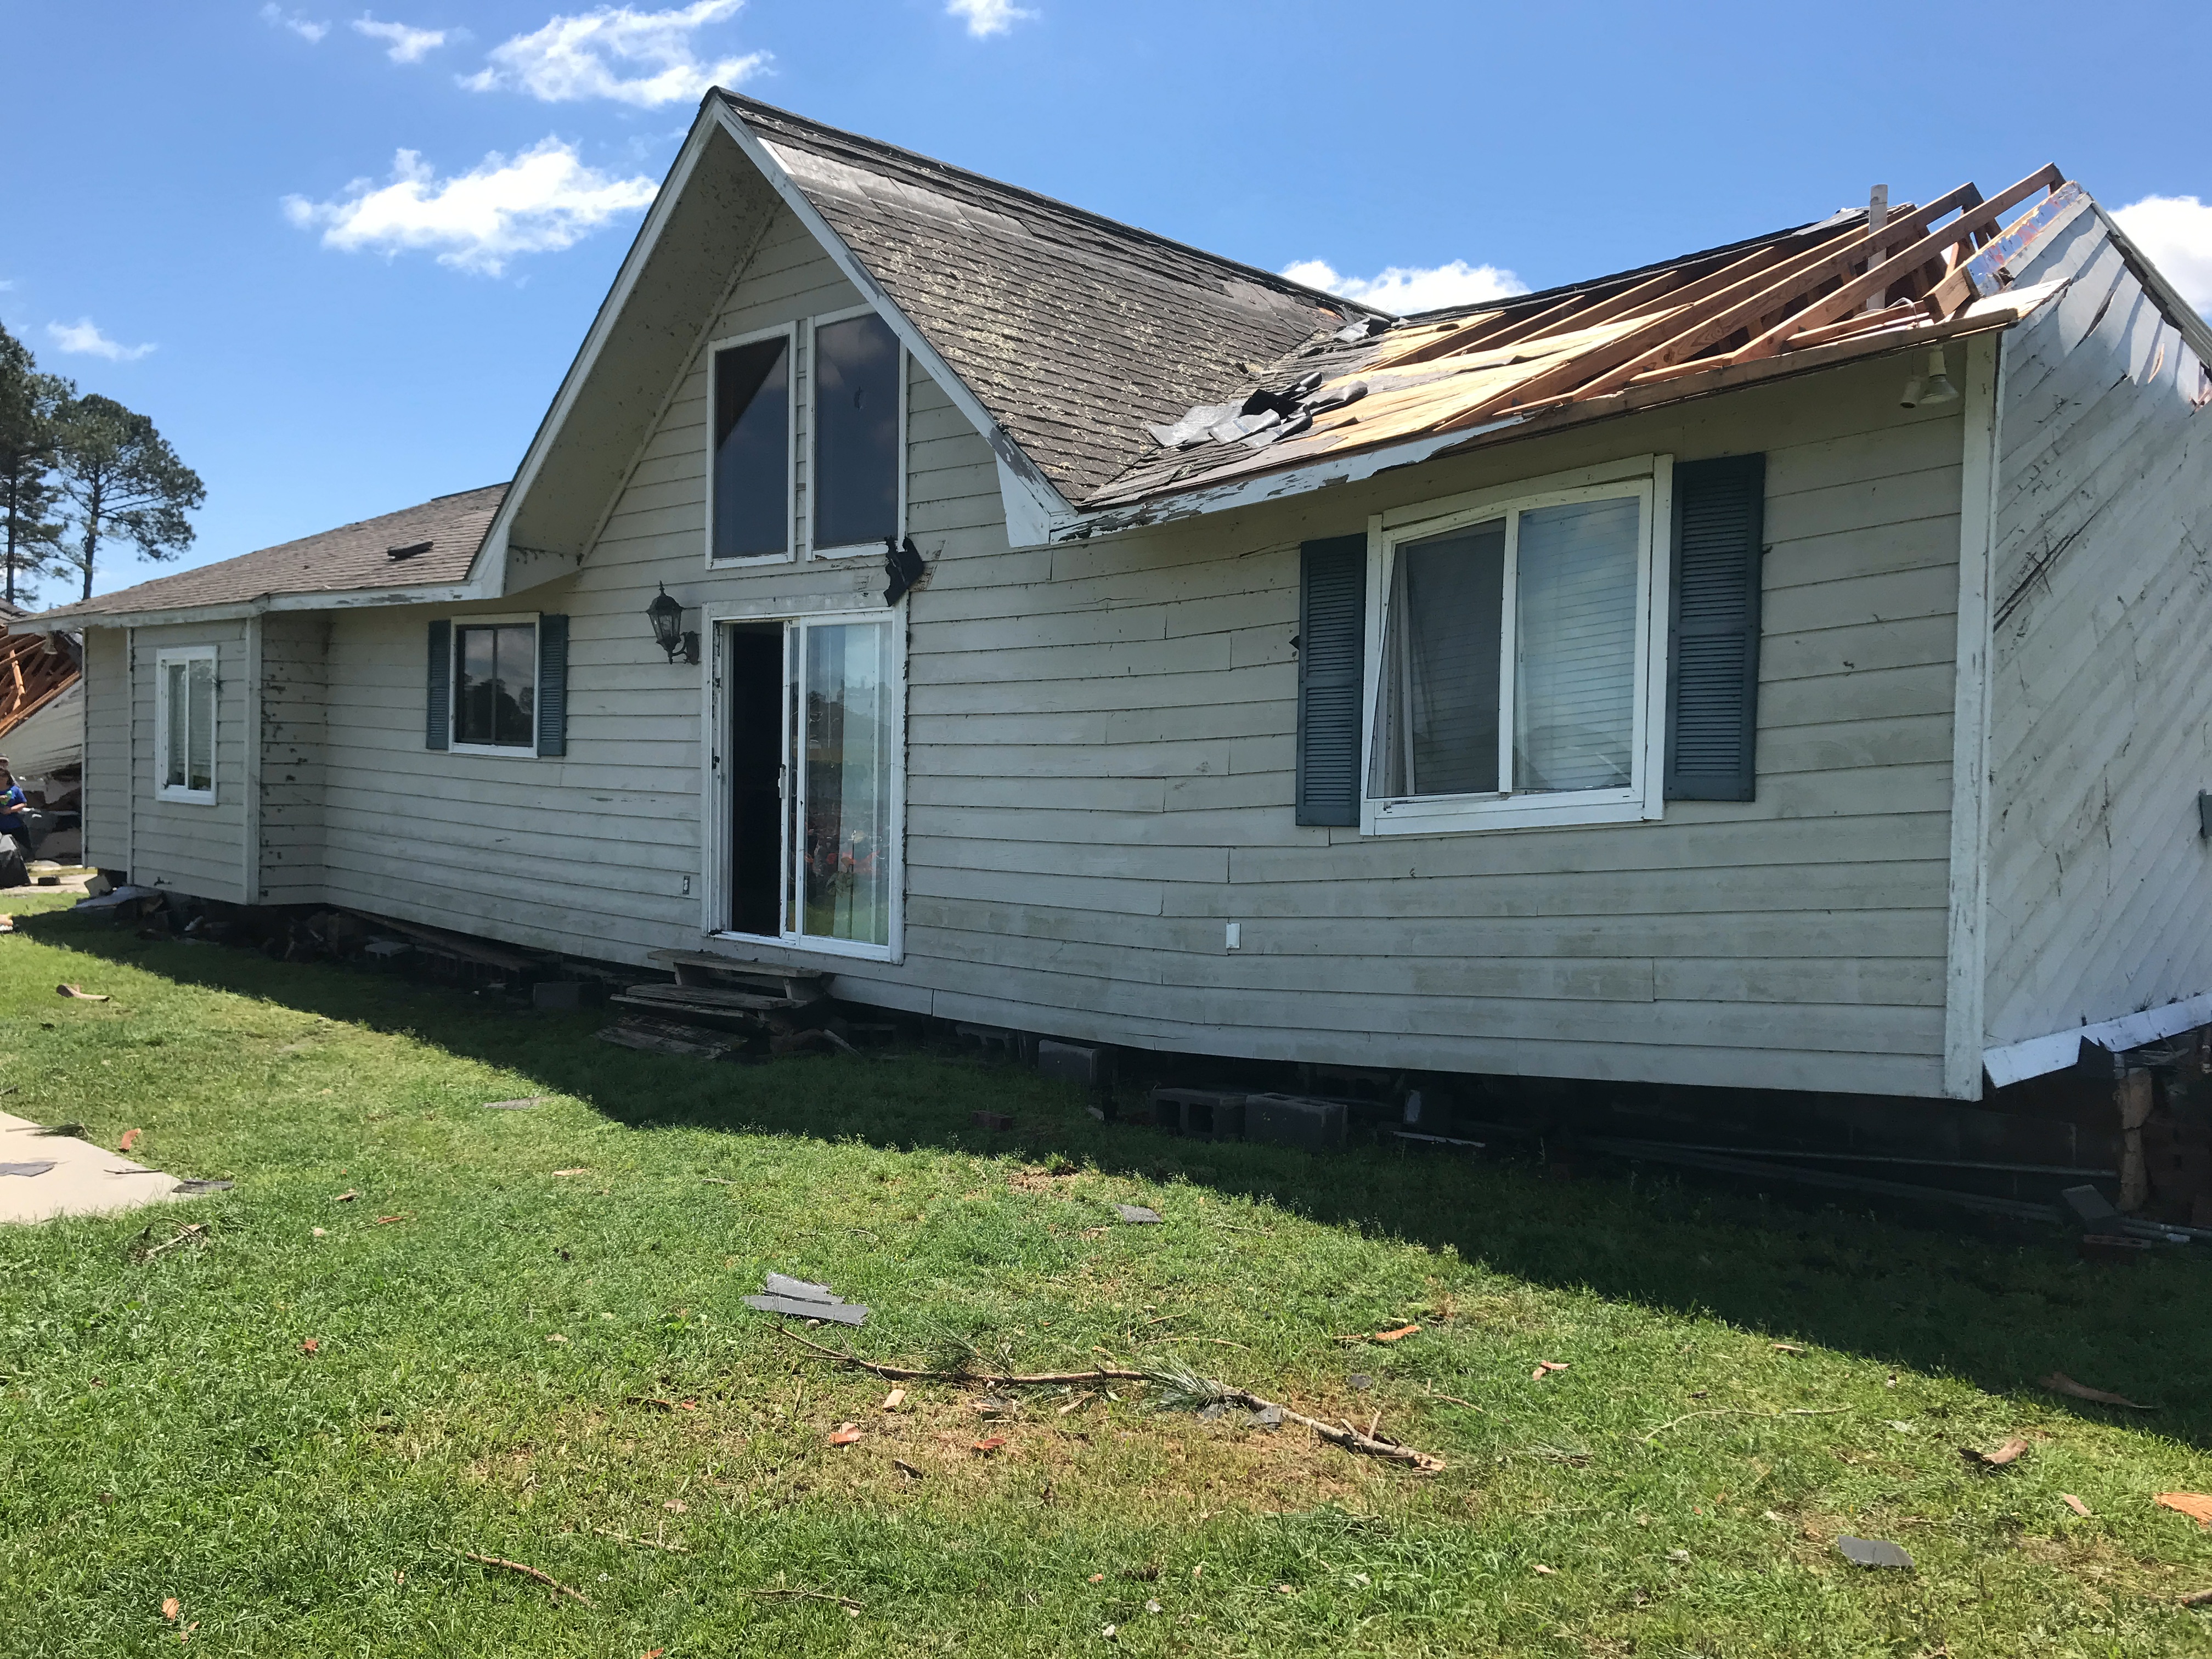 EF2 damage to a home southwest of Douglas, Georgia.